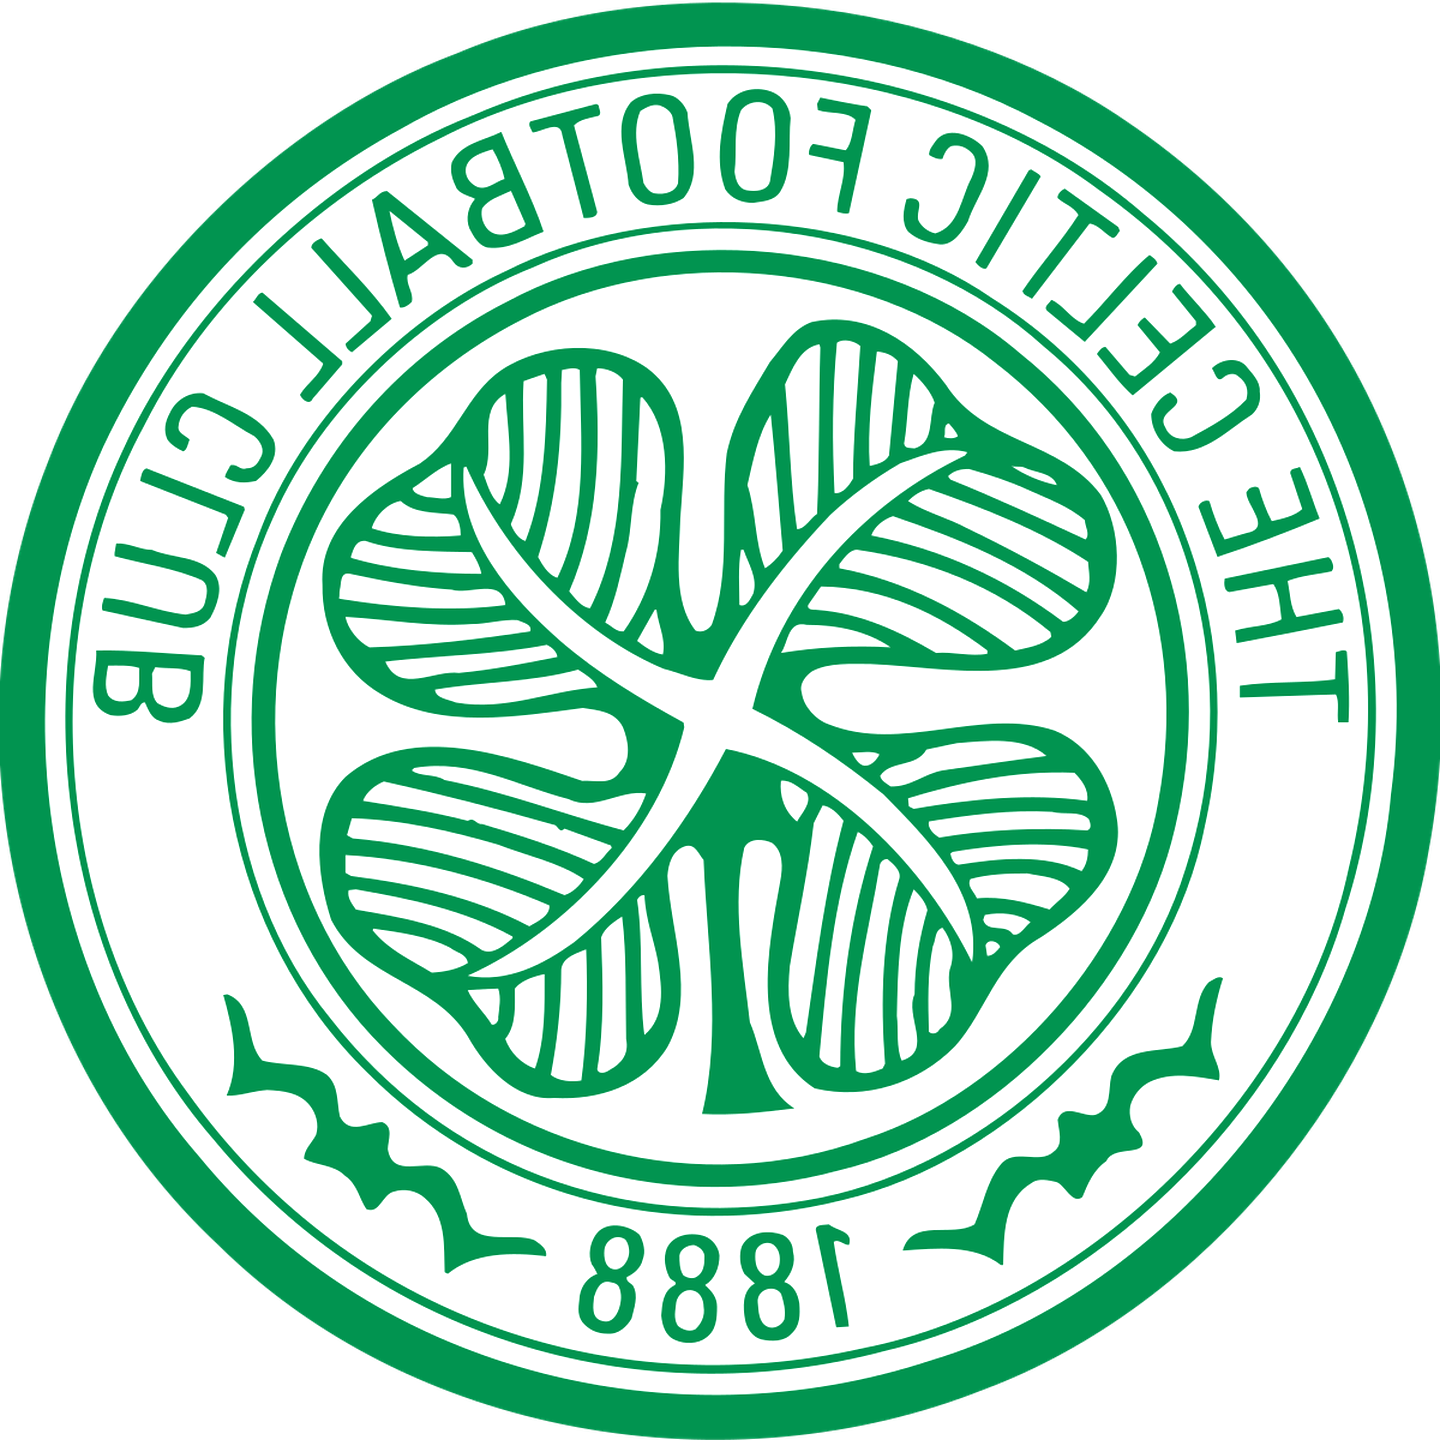 Celtic Fc Badges for sale in UK | 44 used Celtic Fc Badges